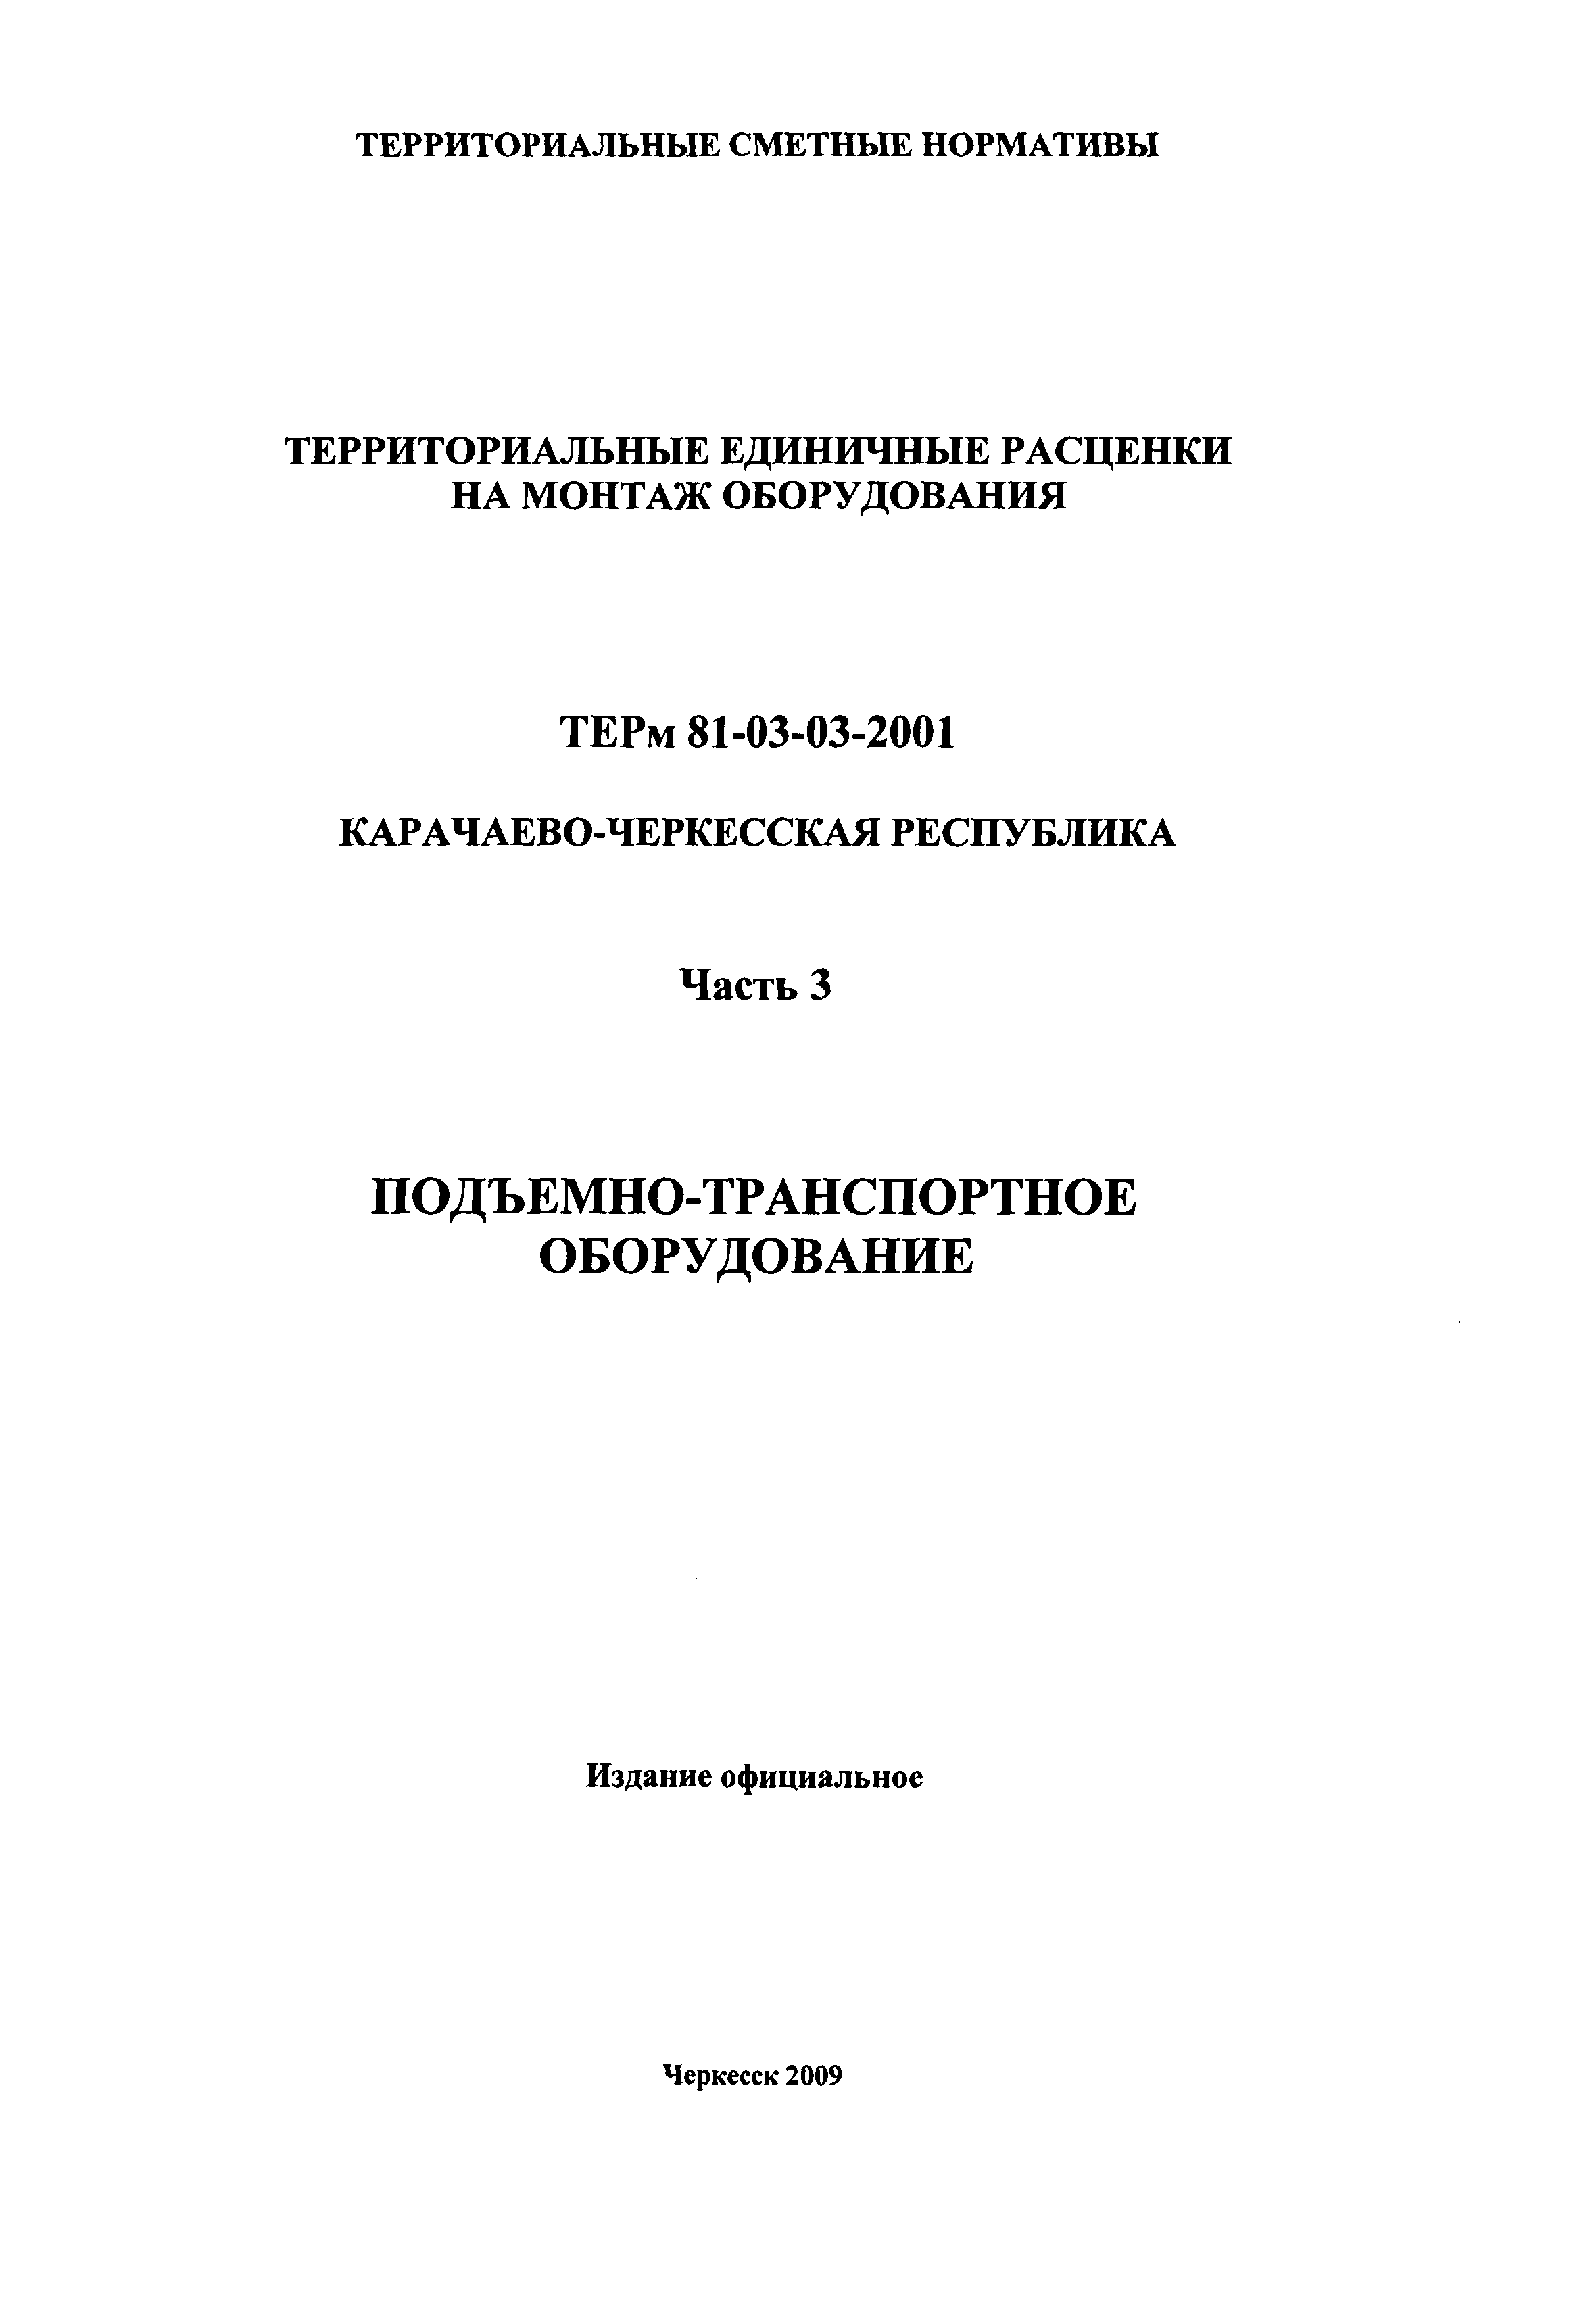 ТЕРм Карачаево-Черкесская Республика 03-2001